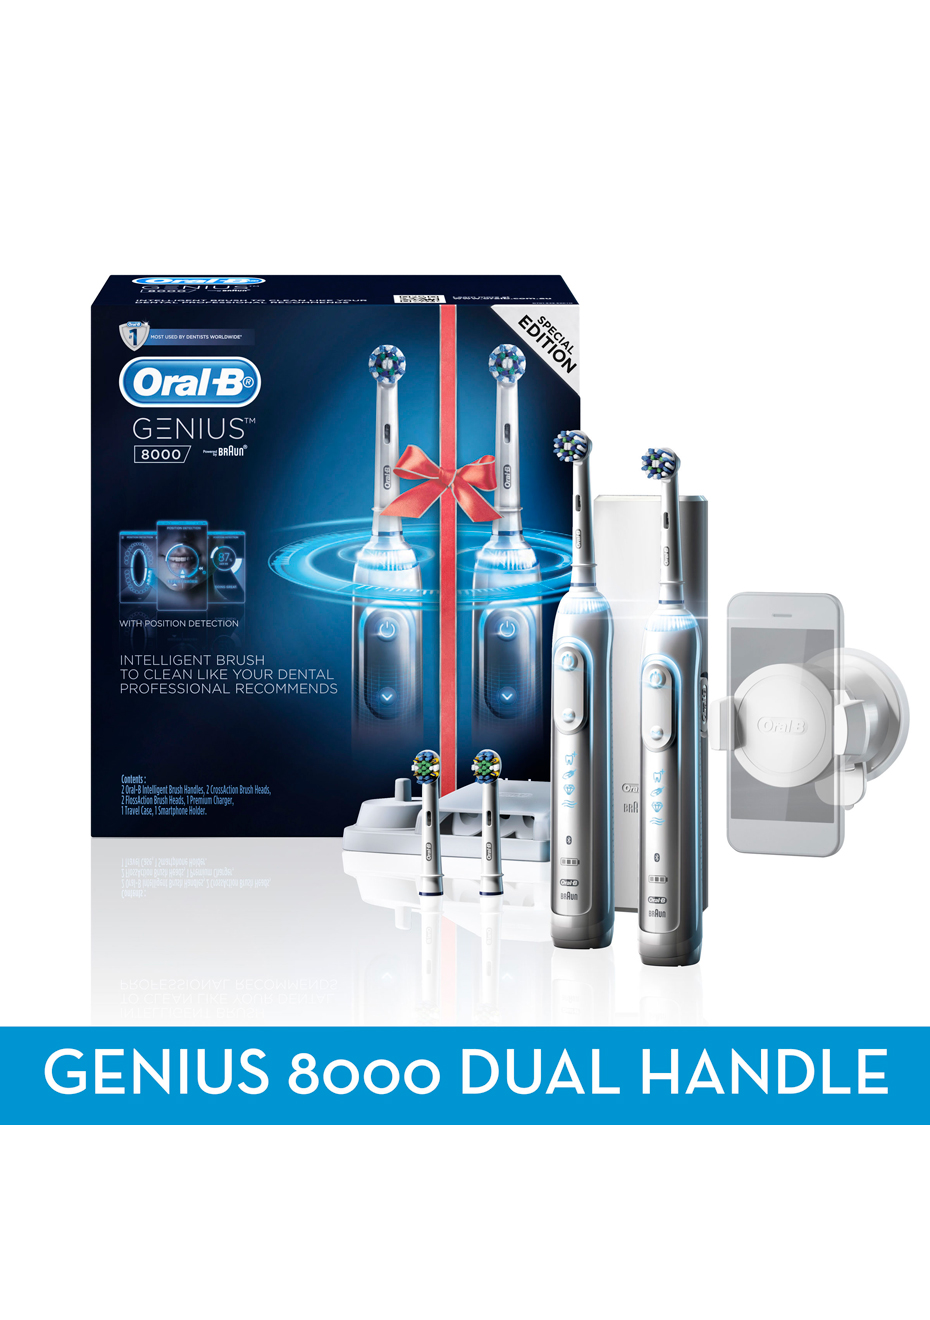 oral-b genius 8000